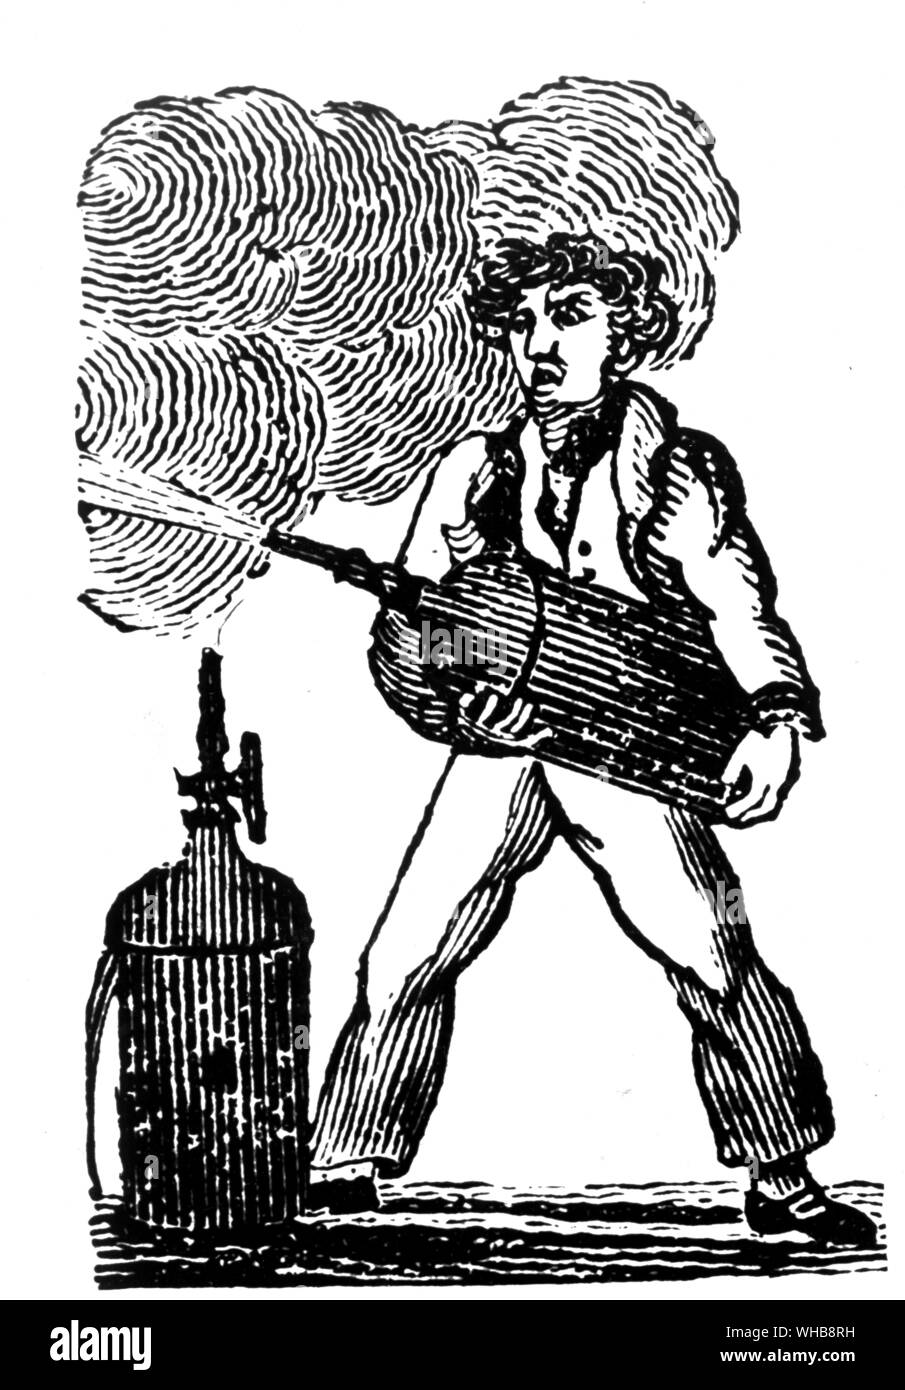 Kapitän Manby's Erfindung 1816 Mit freundlicher Genehmigung des Fire Protection Association, London - Kapitän George William Manby (geboren am 28. November 1765 in Denver, Norfolk, England. 18. November 1854 in Great Yarmouth starb) war der Erfinder der tragbaren Feuerlöscher unter Anderem.. Stockfoto